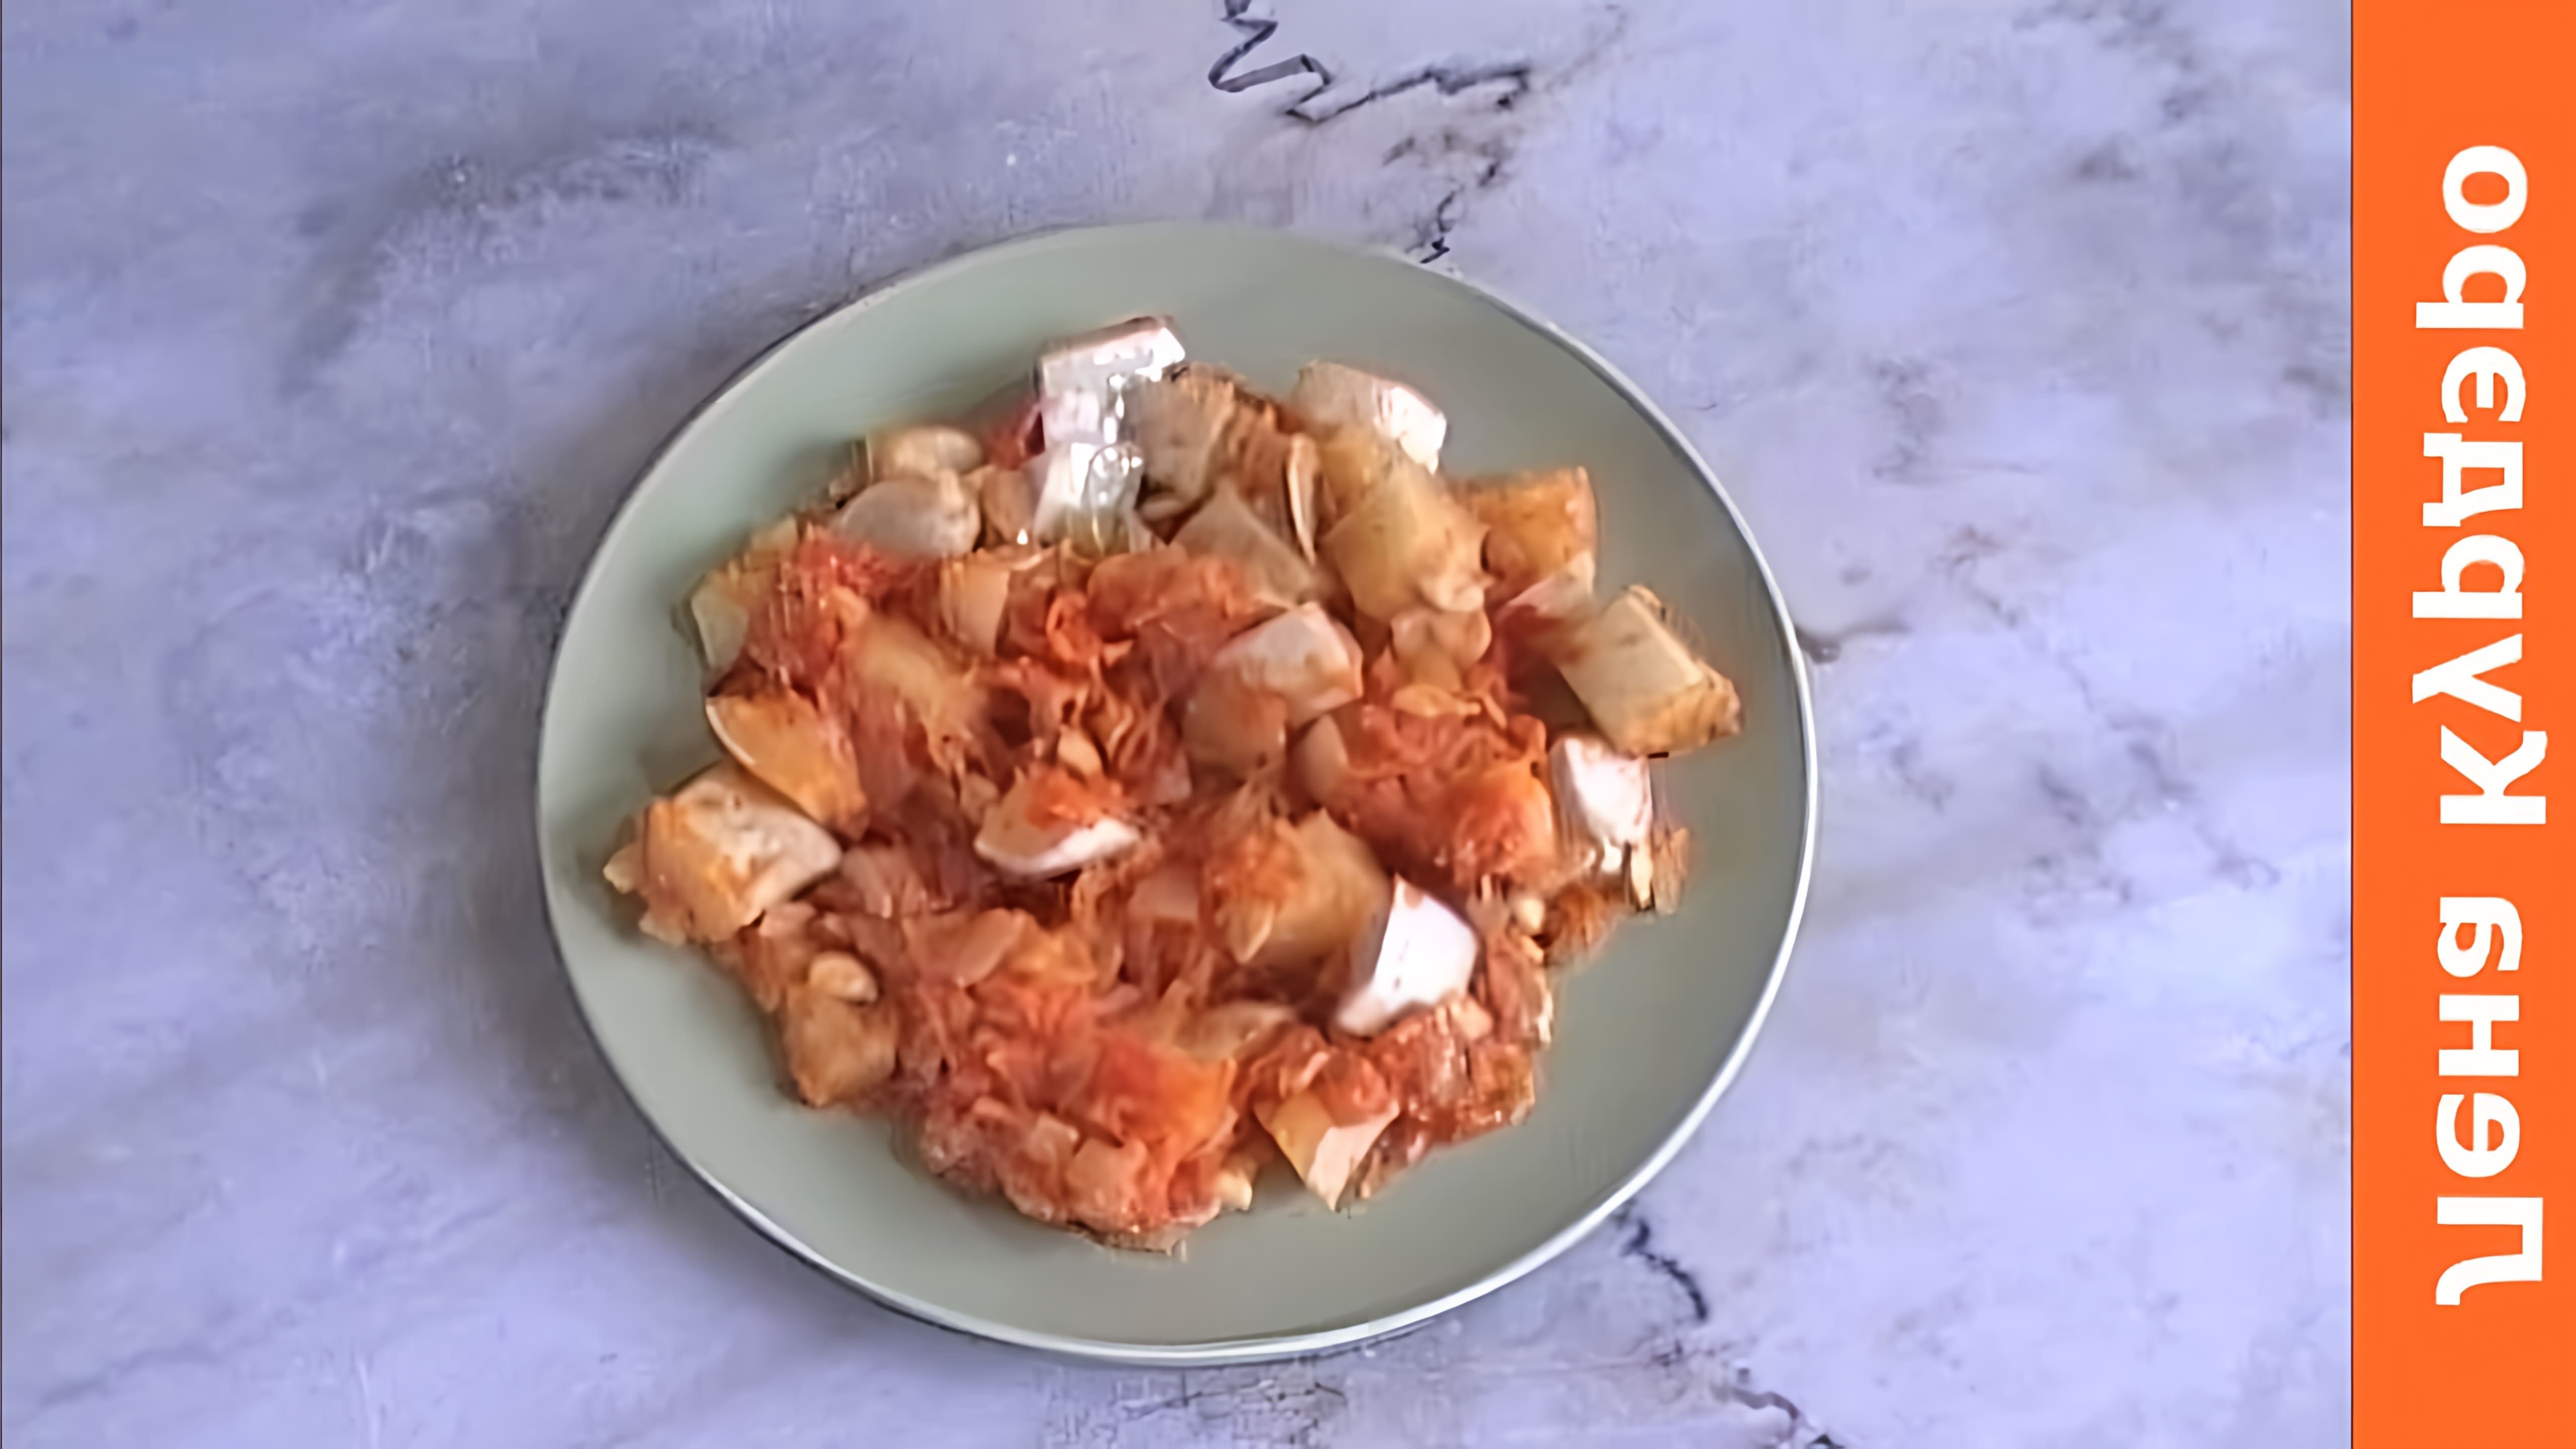 В этом видео показано, как приготовить вкусное блюдо из патиссонов с луком, морковкой и помидорами